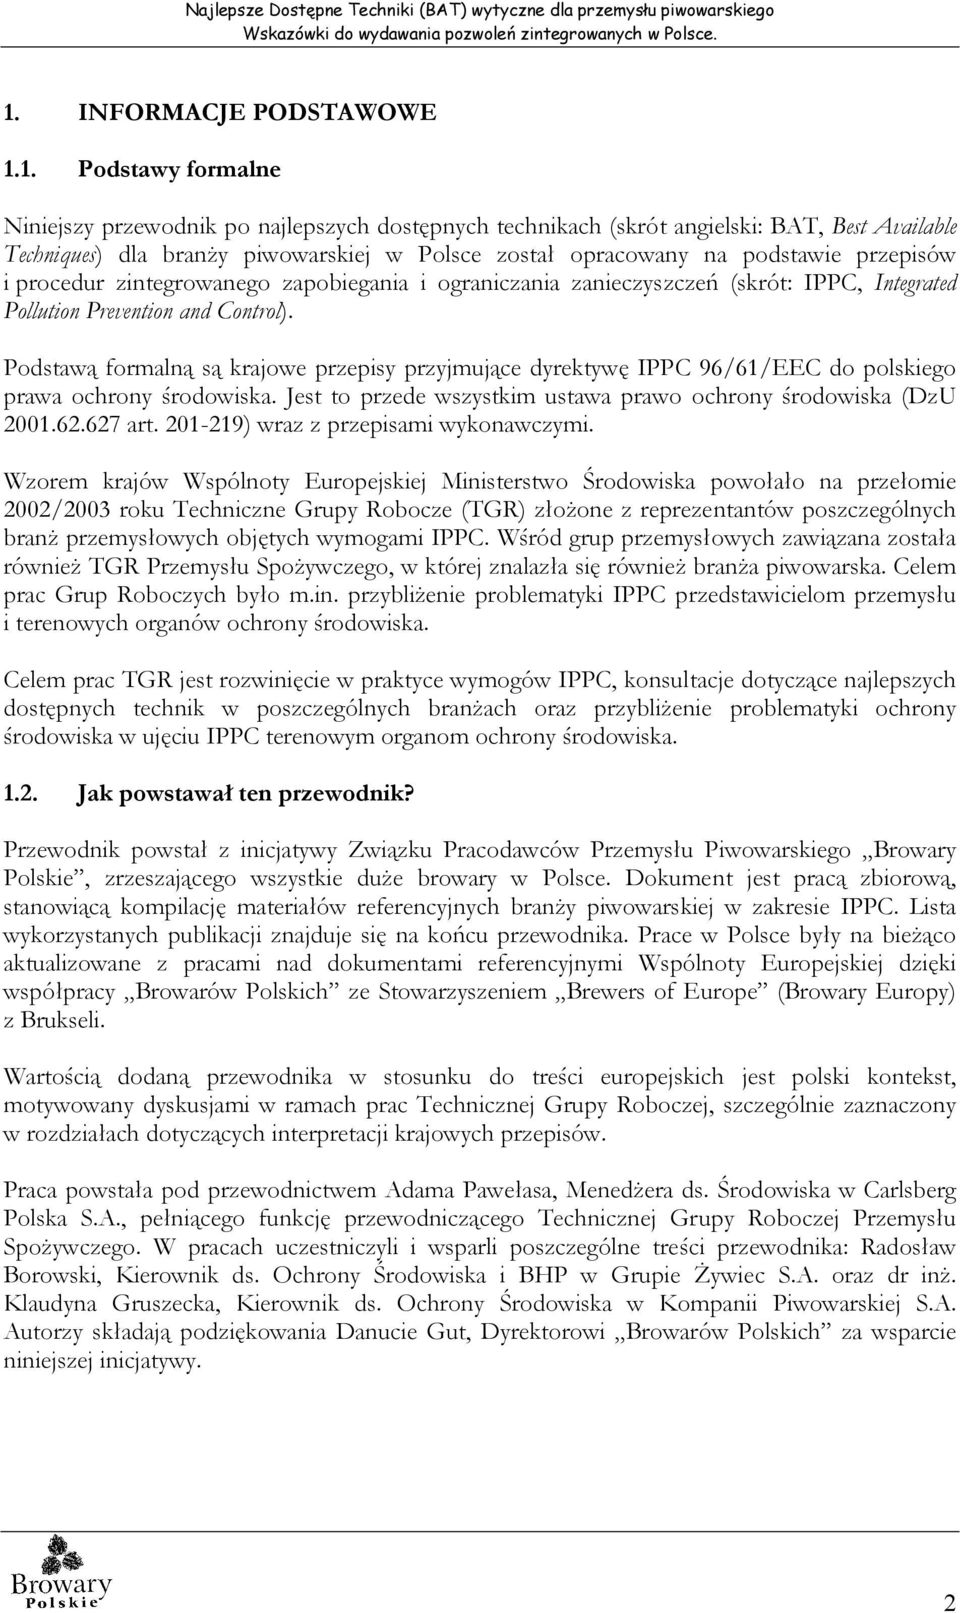 Podstawą formalną są krajowe przepisy przyjmujące dyrektywę IPPC 96/61/EEC do polskiego prawa ochrony środowiska. Jest to przede wszystkim ustawa prawo ochrony środowiska (DzU 2001.62.627 art.